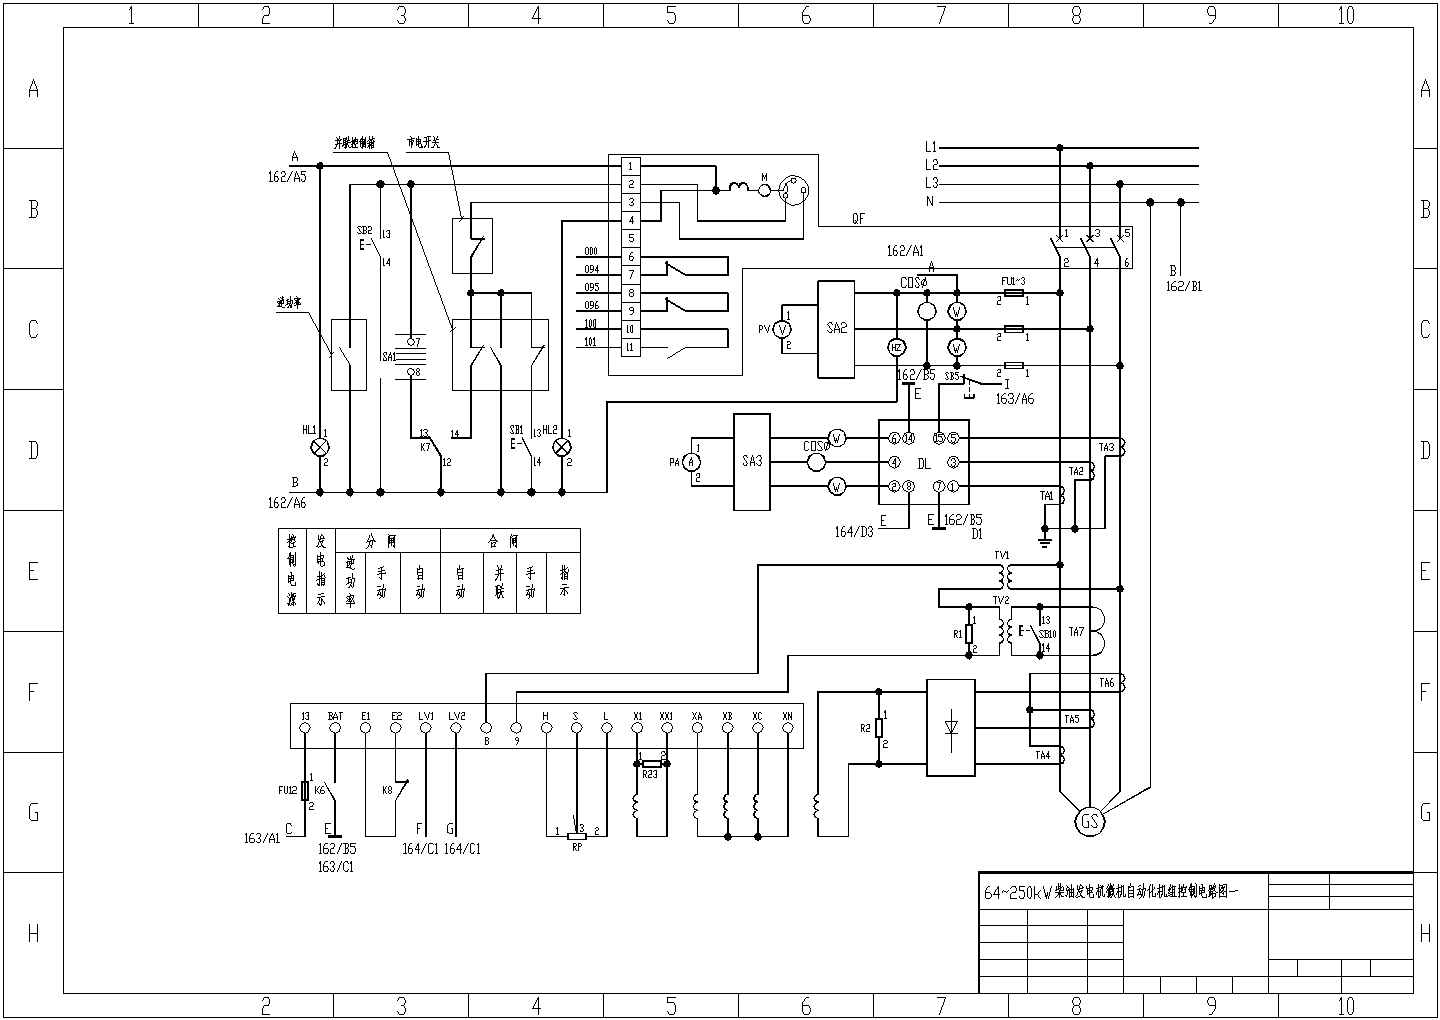 64-250KW柴油发电机微机自动化机组控制电路图